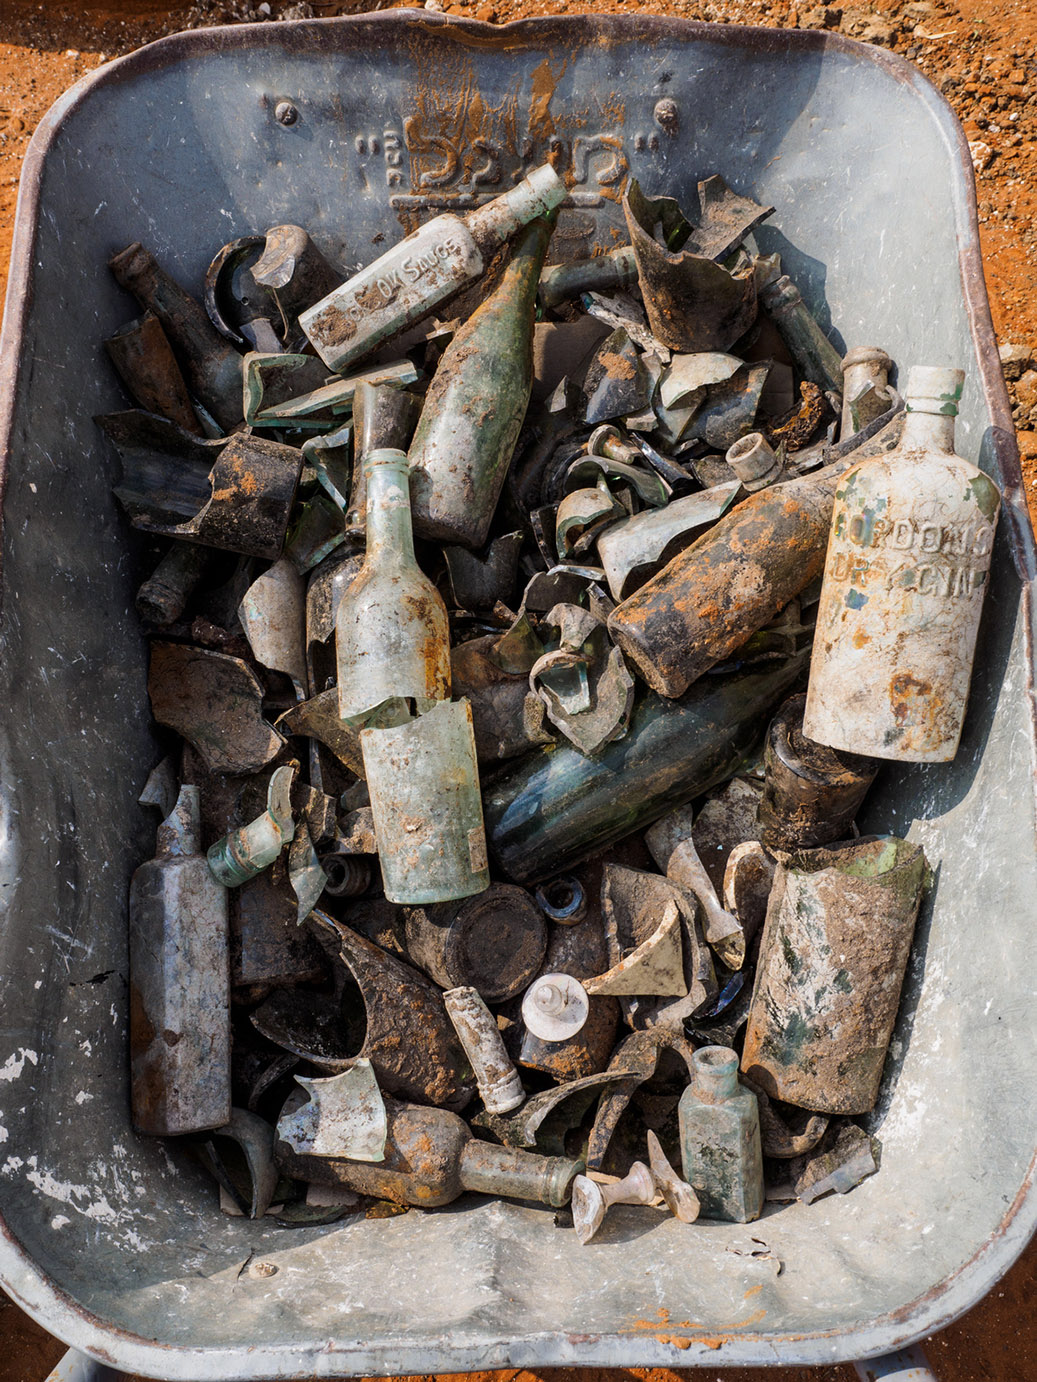 בקבוקים וממצאים נוספים מבור האשפה, (צילום אסף פרץ, באדיבות רשות העתיקות)